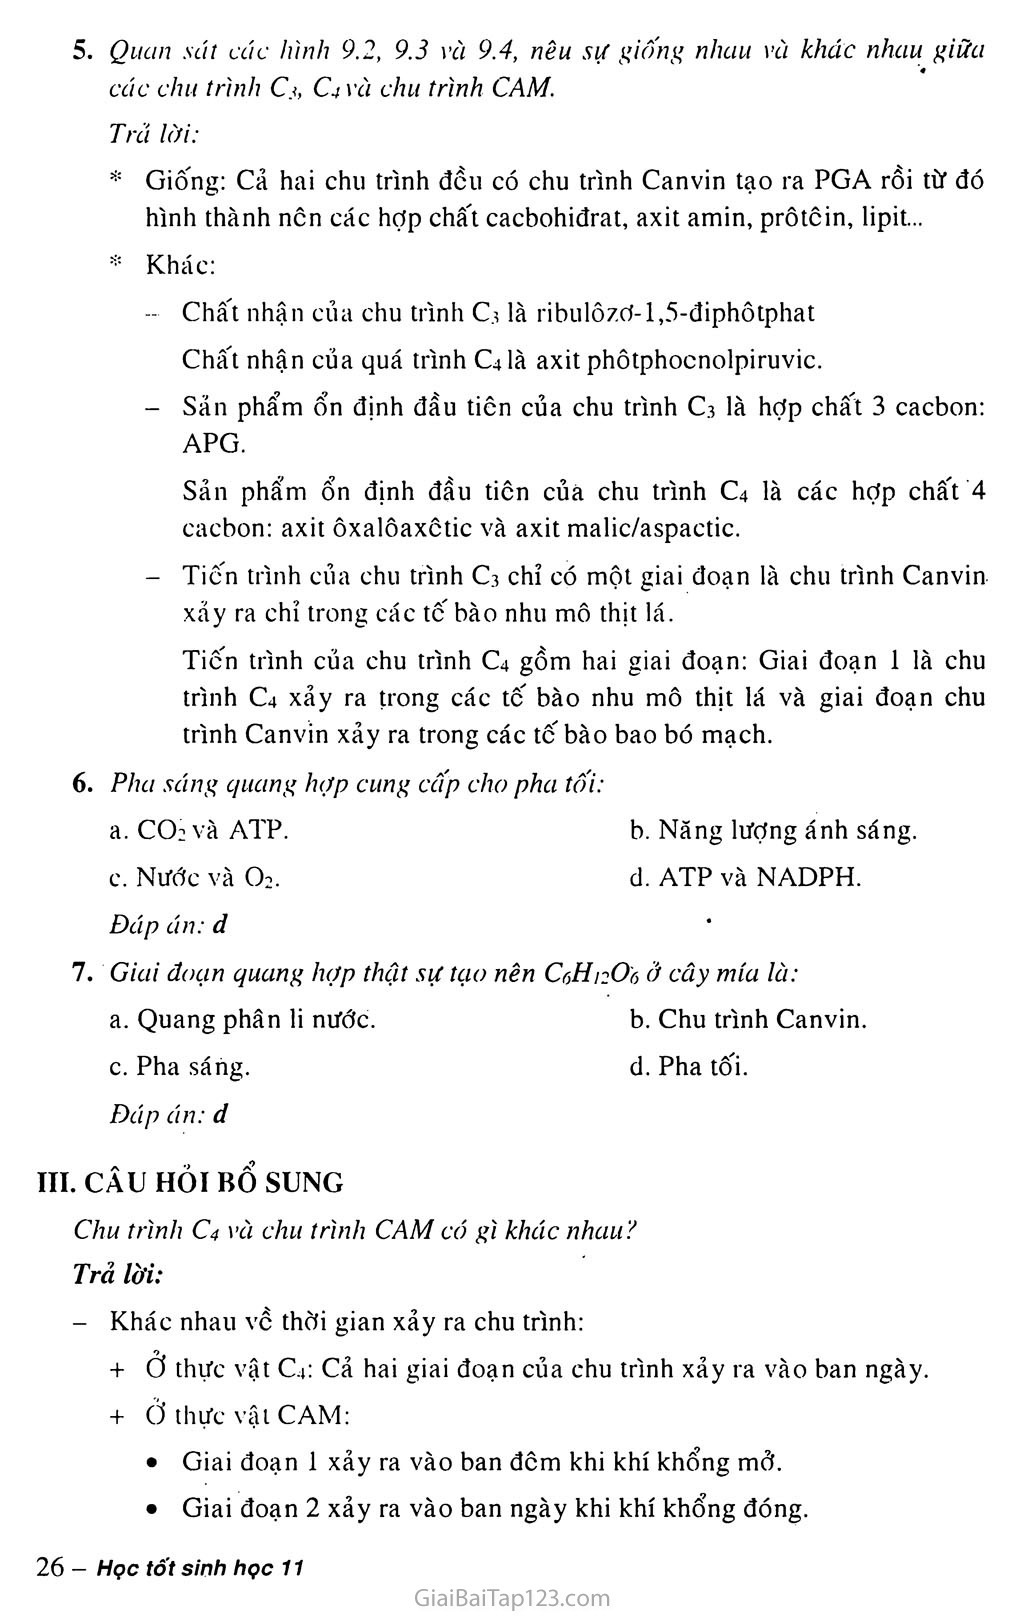 Bài 9. Quang hợp ở các nhóm thực vậ C3, C4 và CAM trang 4